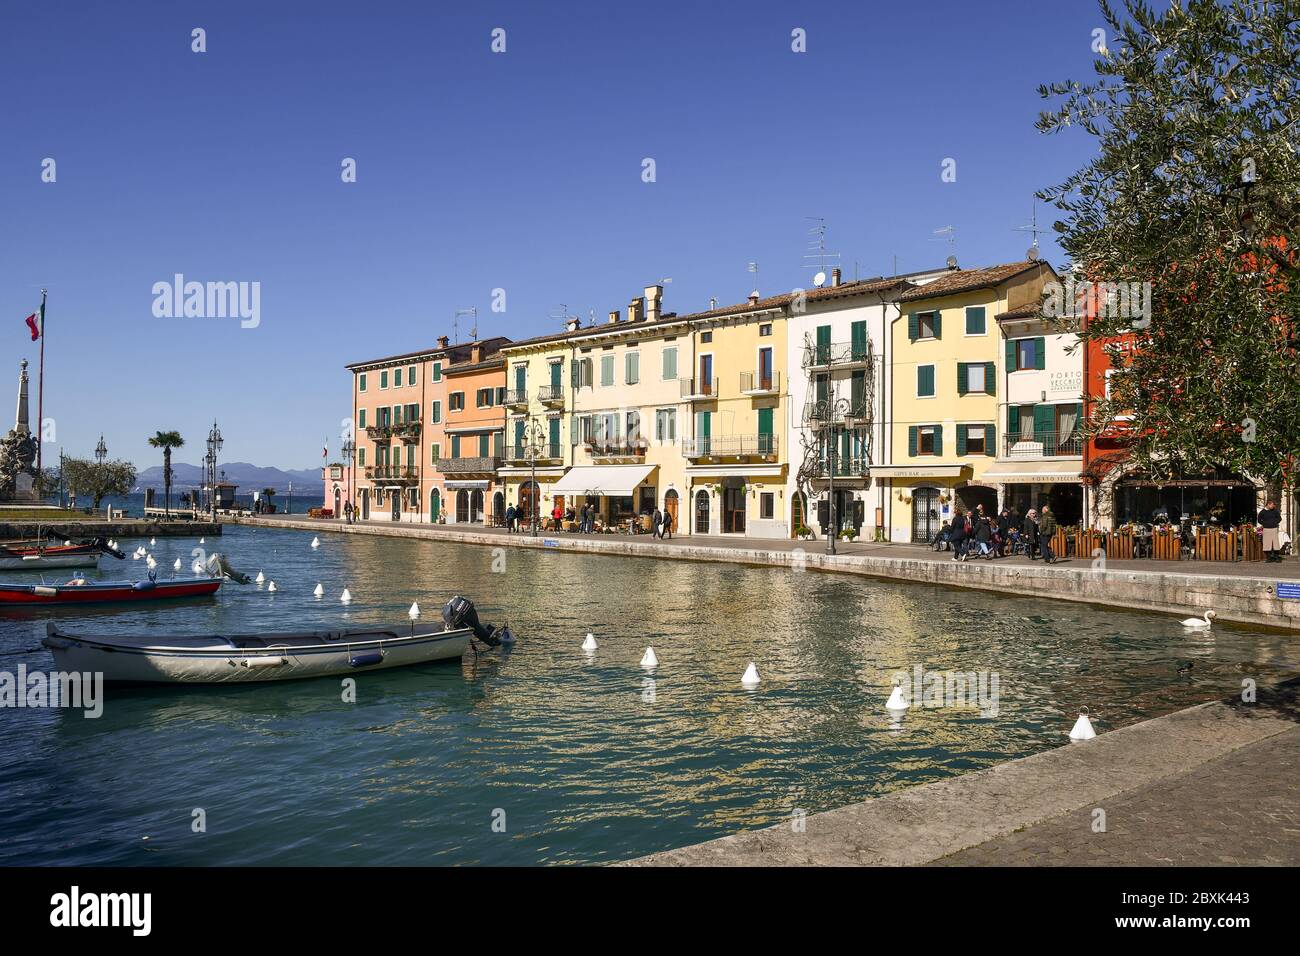 Vue sur le port de la vieille ville sur les rives du lac de Garde avec des bateaux de pêche amarrés dans le canal d'eau, Lazise, Vérone, Vénétie, Italie Banque D'Images